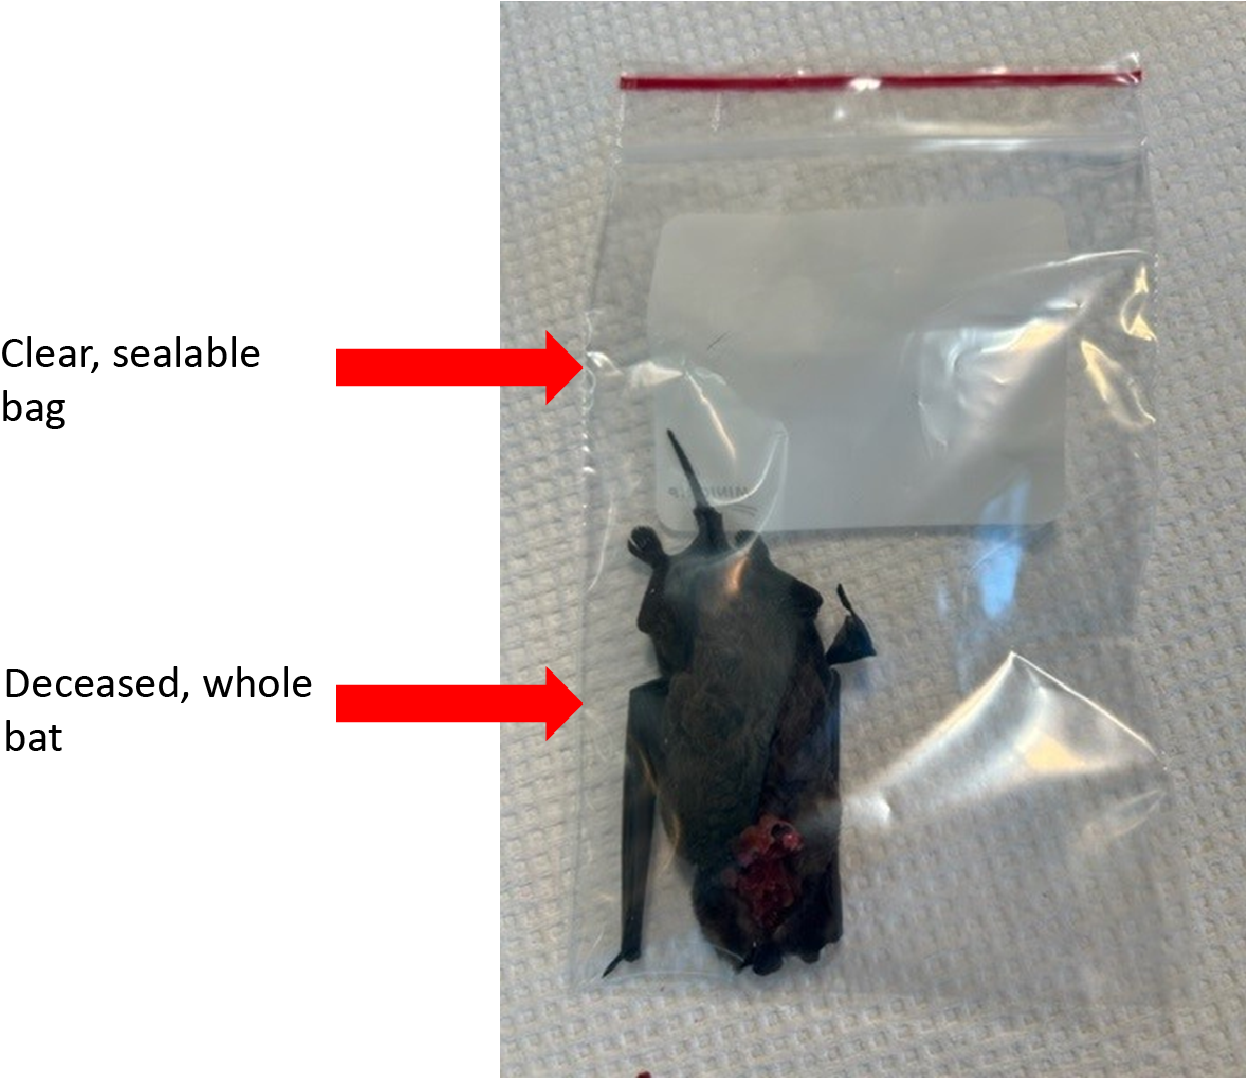 "Bat specimen in plastic bag"